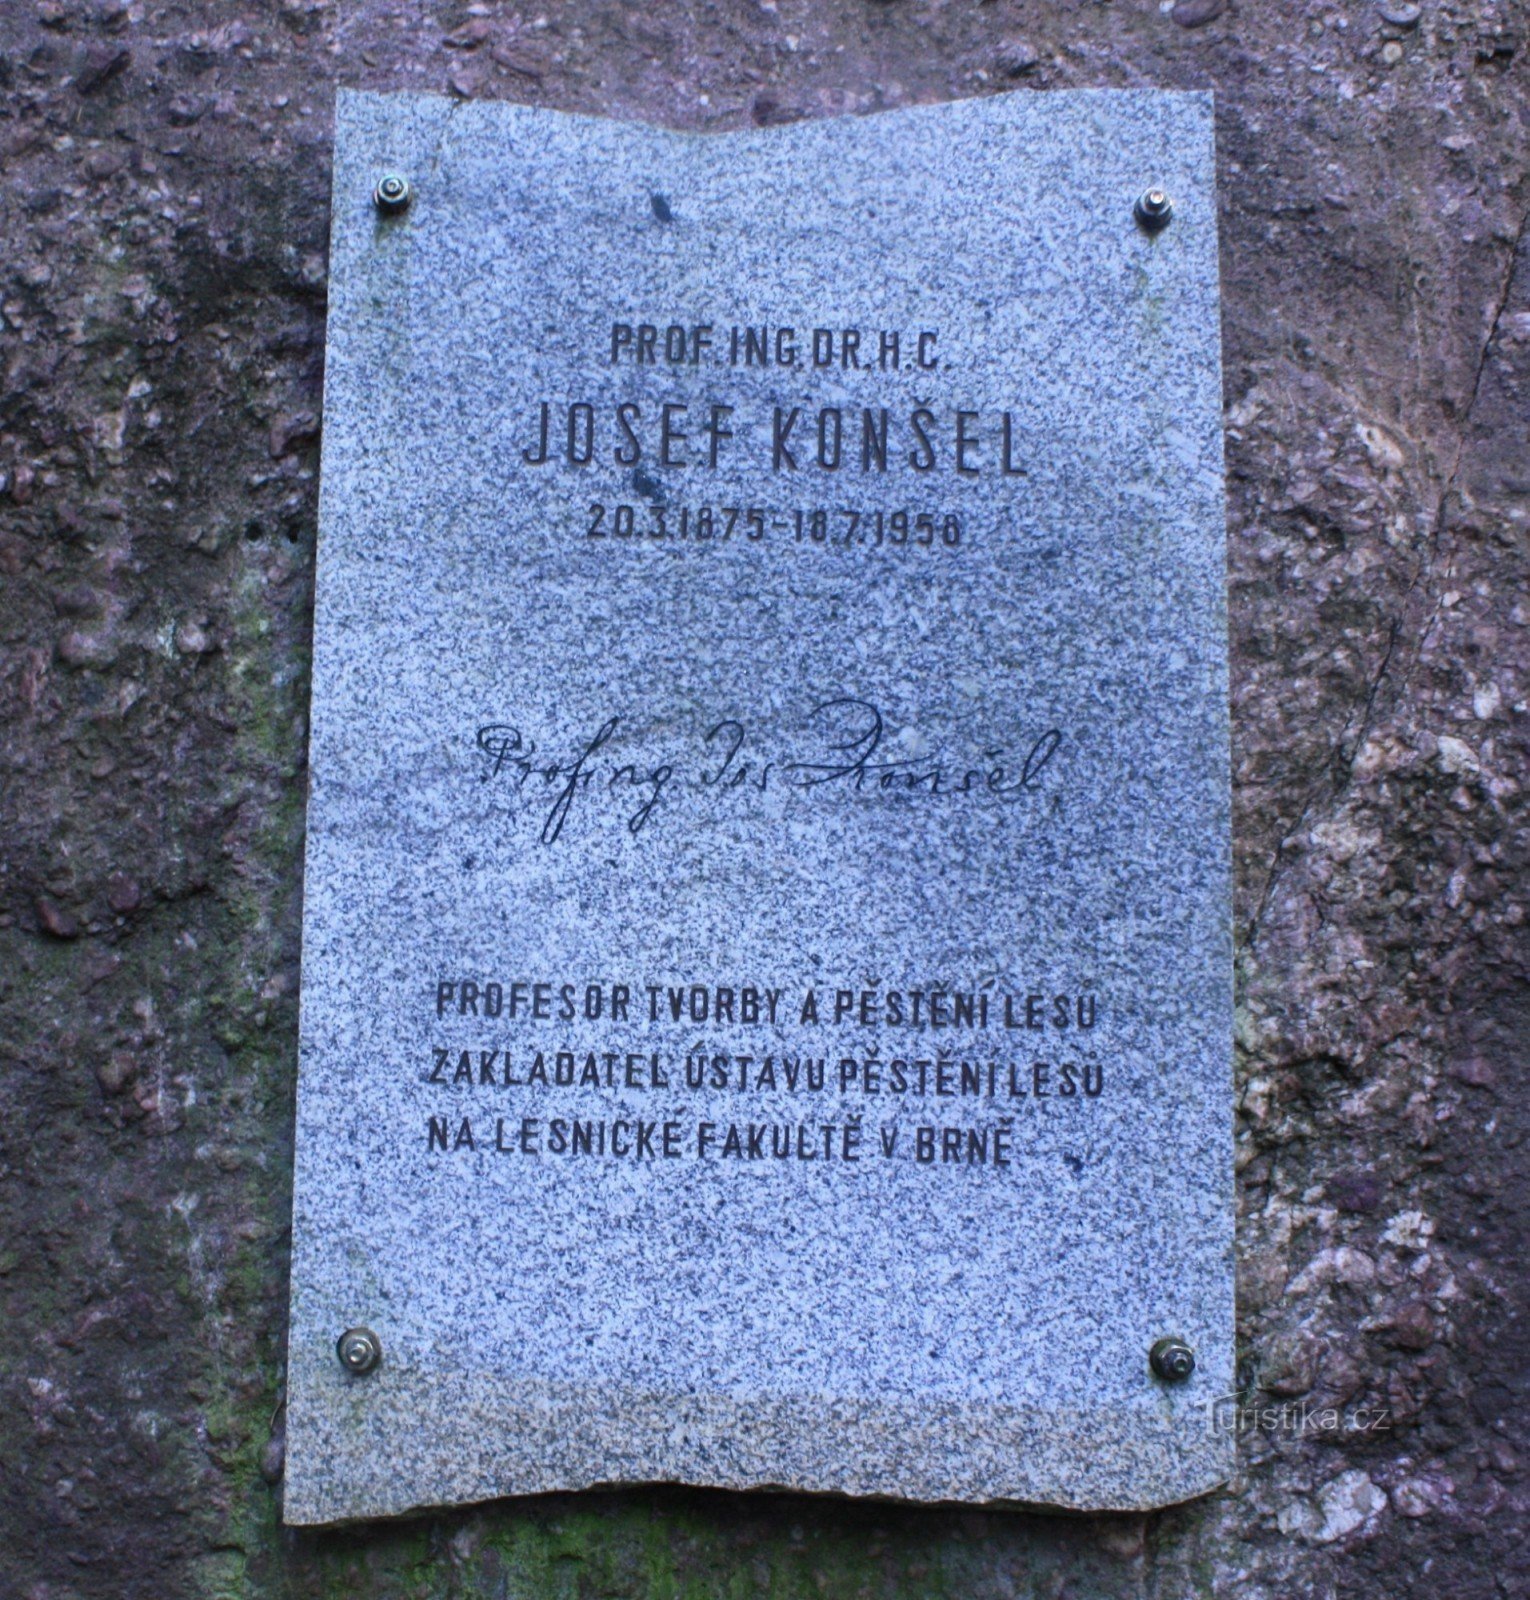 Pomnik Josefa Konšel